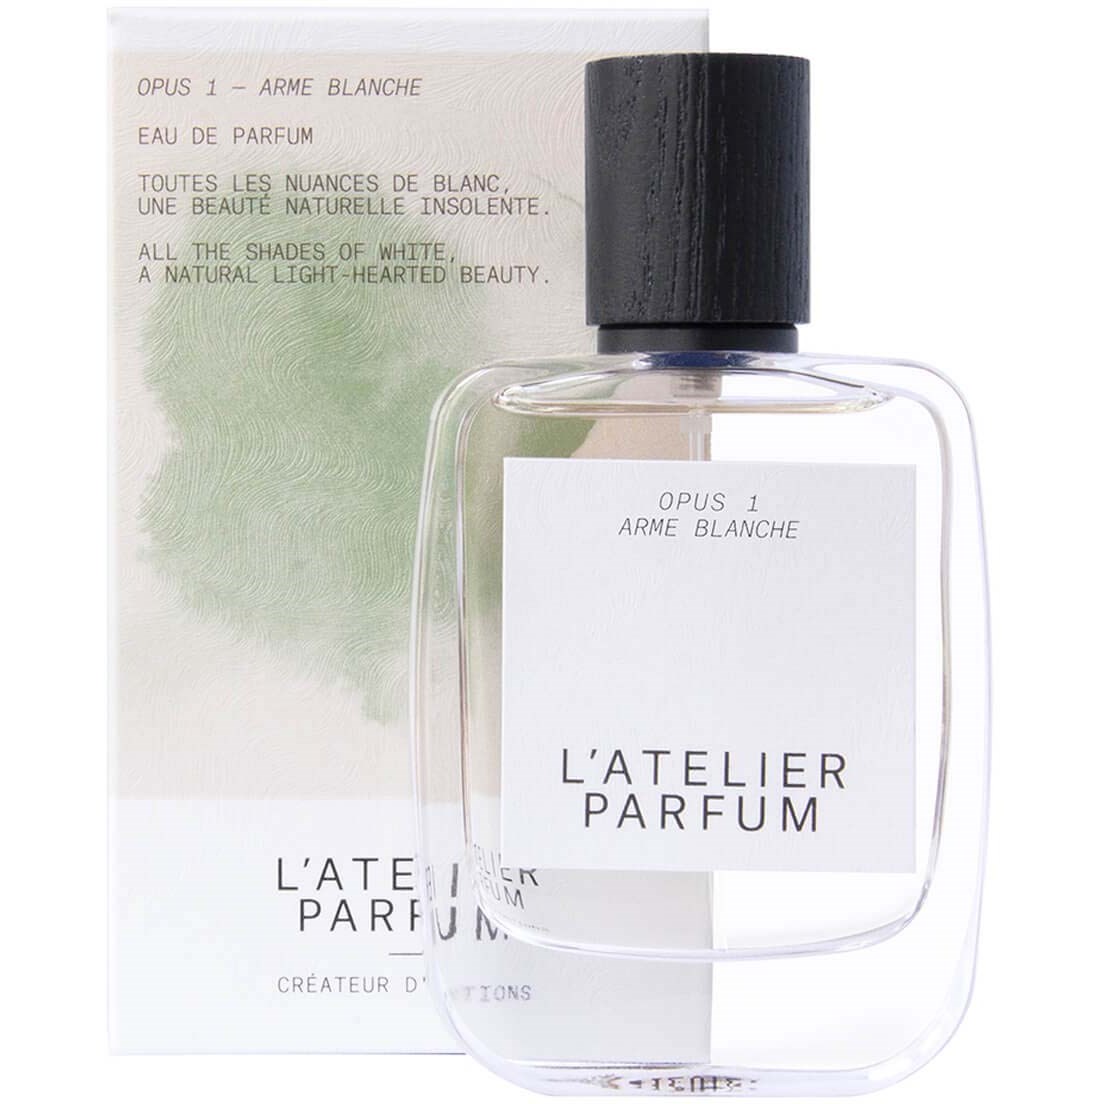 L'Atelier Parfum Opus 1 Arme Blanche Eau de Parfum 50 ml